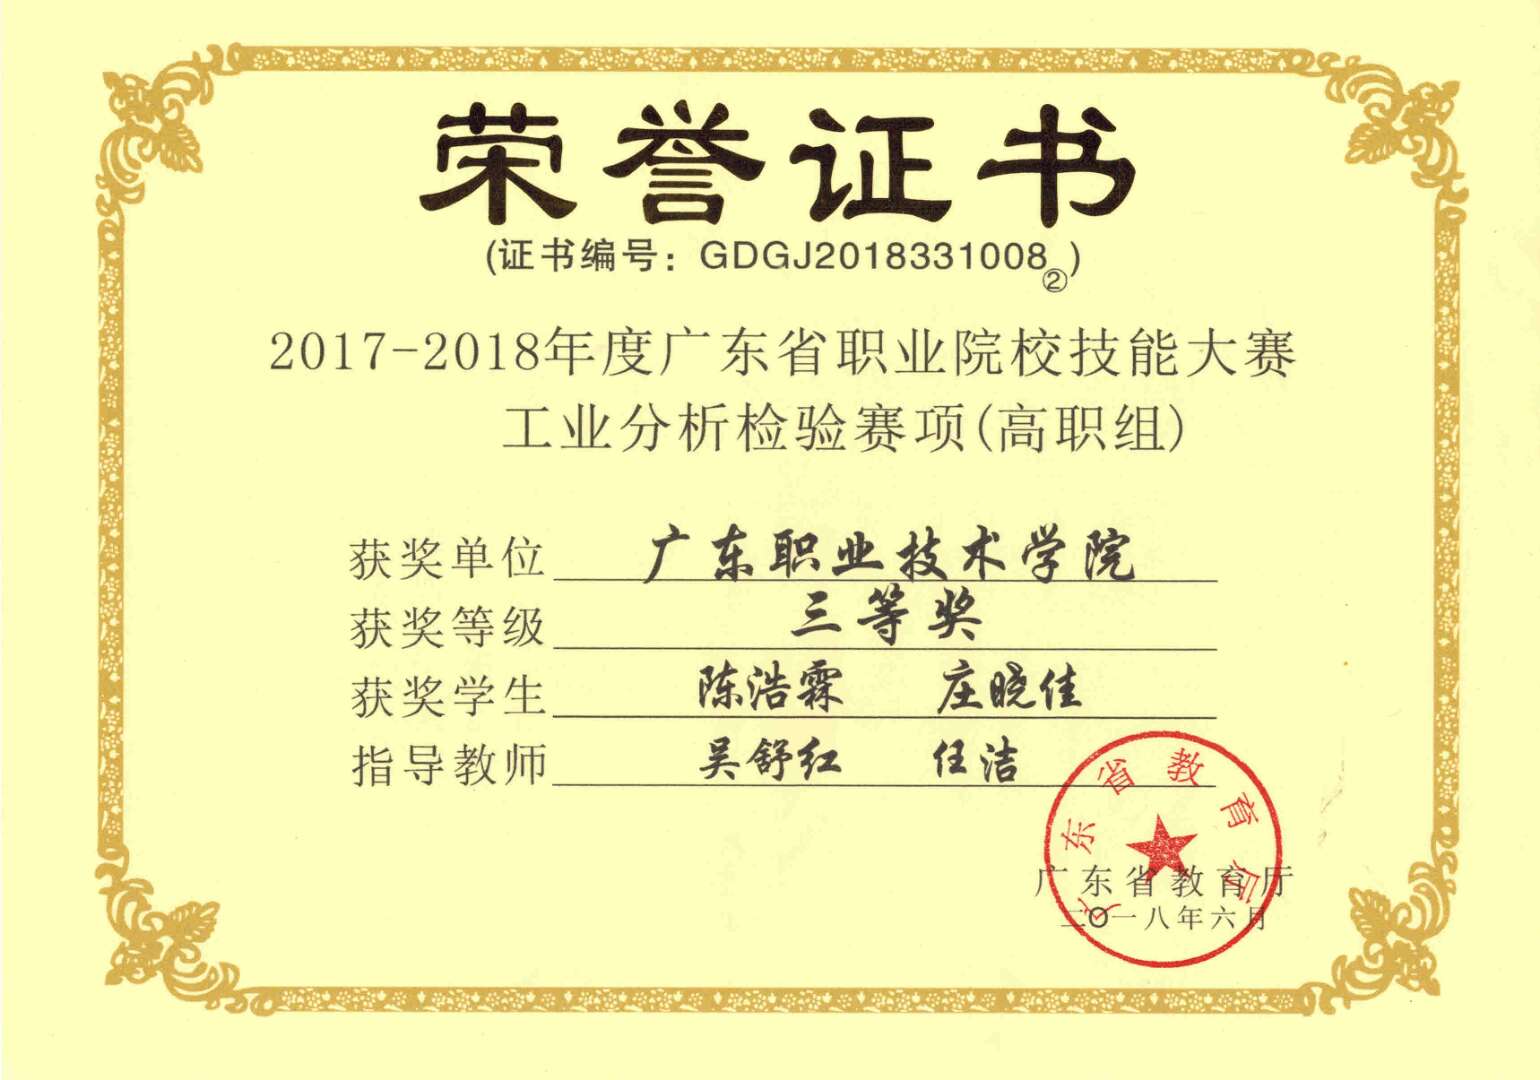 我系學子在2017-2018年度廣東省職業院校技能大賽工業分析檢測賽項（高職組）比賽中榮獲三等獎